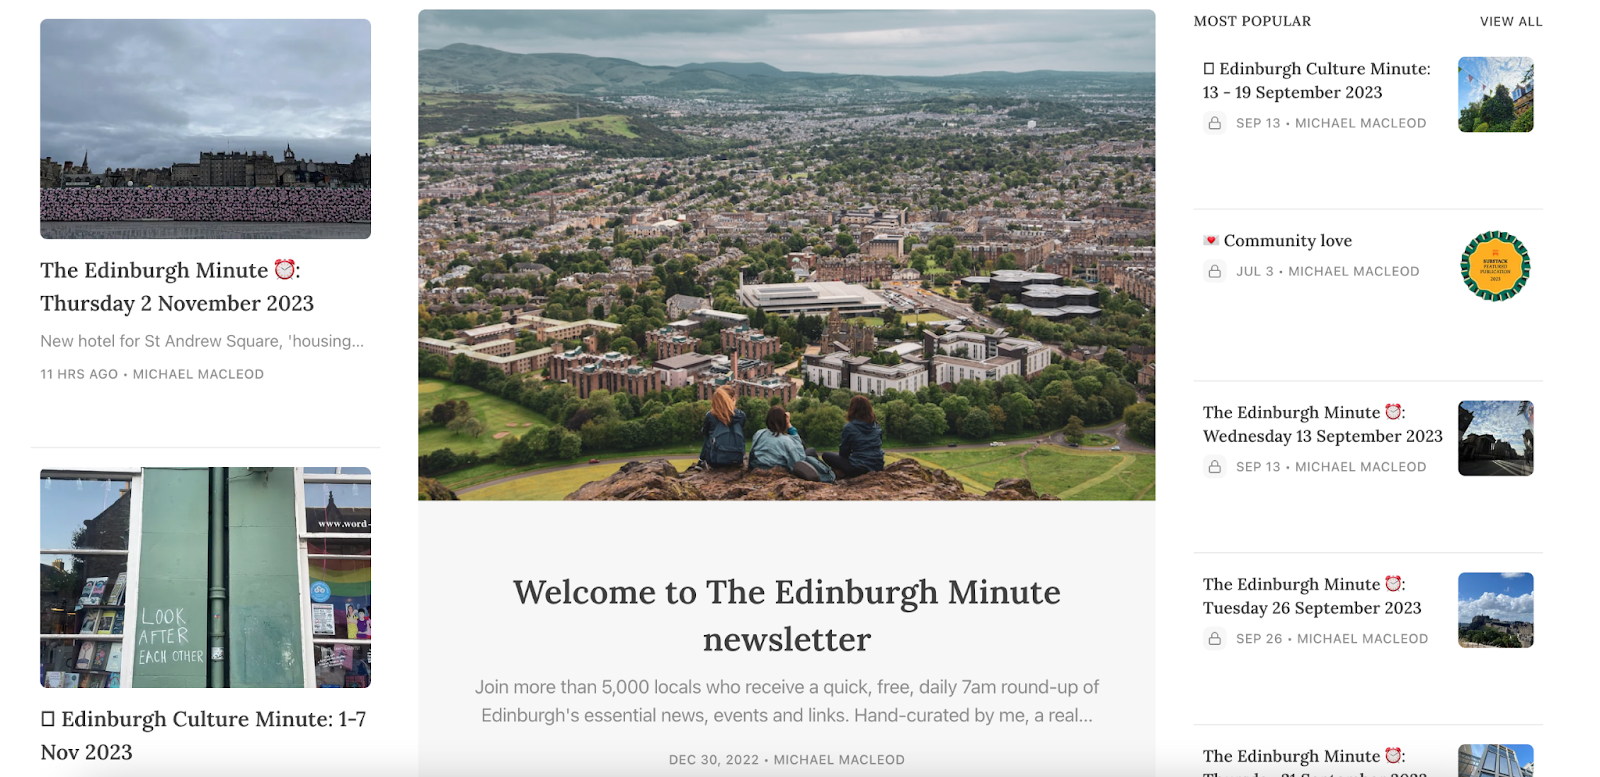 The Edinburgh Minute newsletter